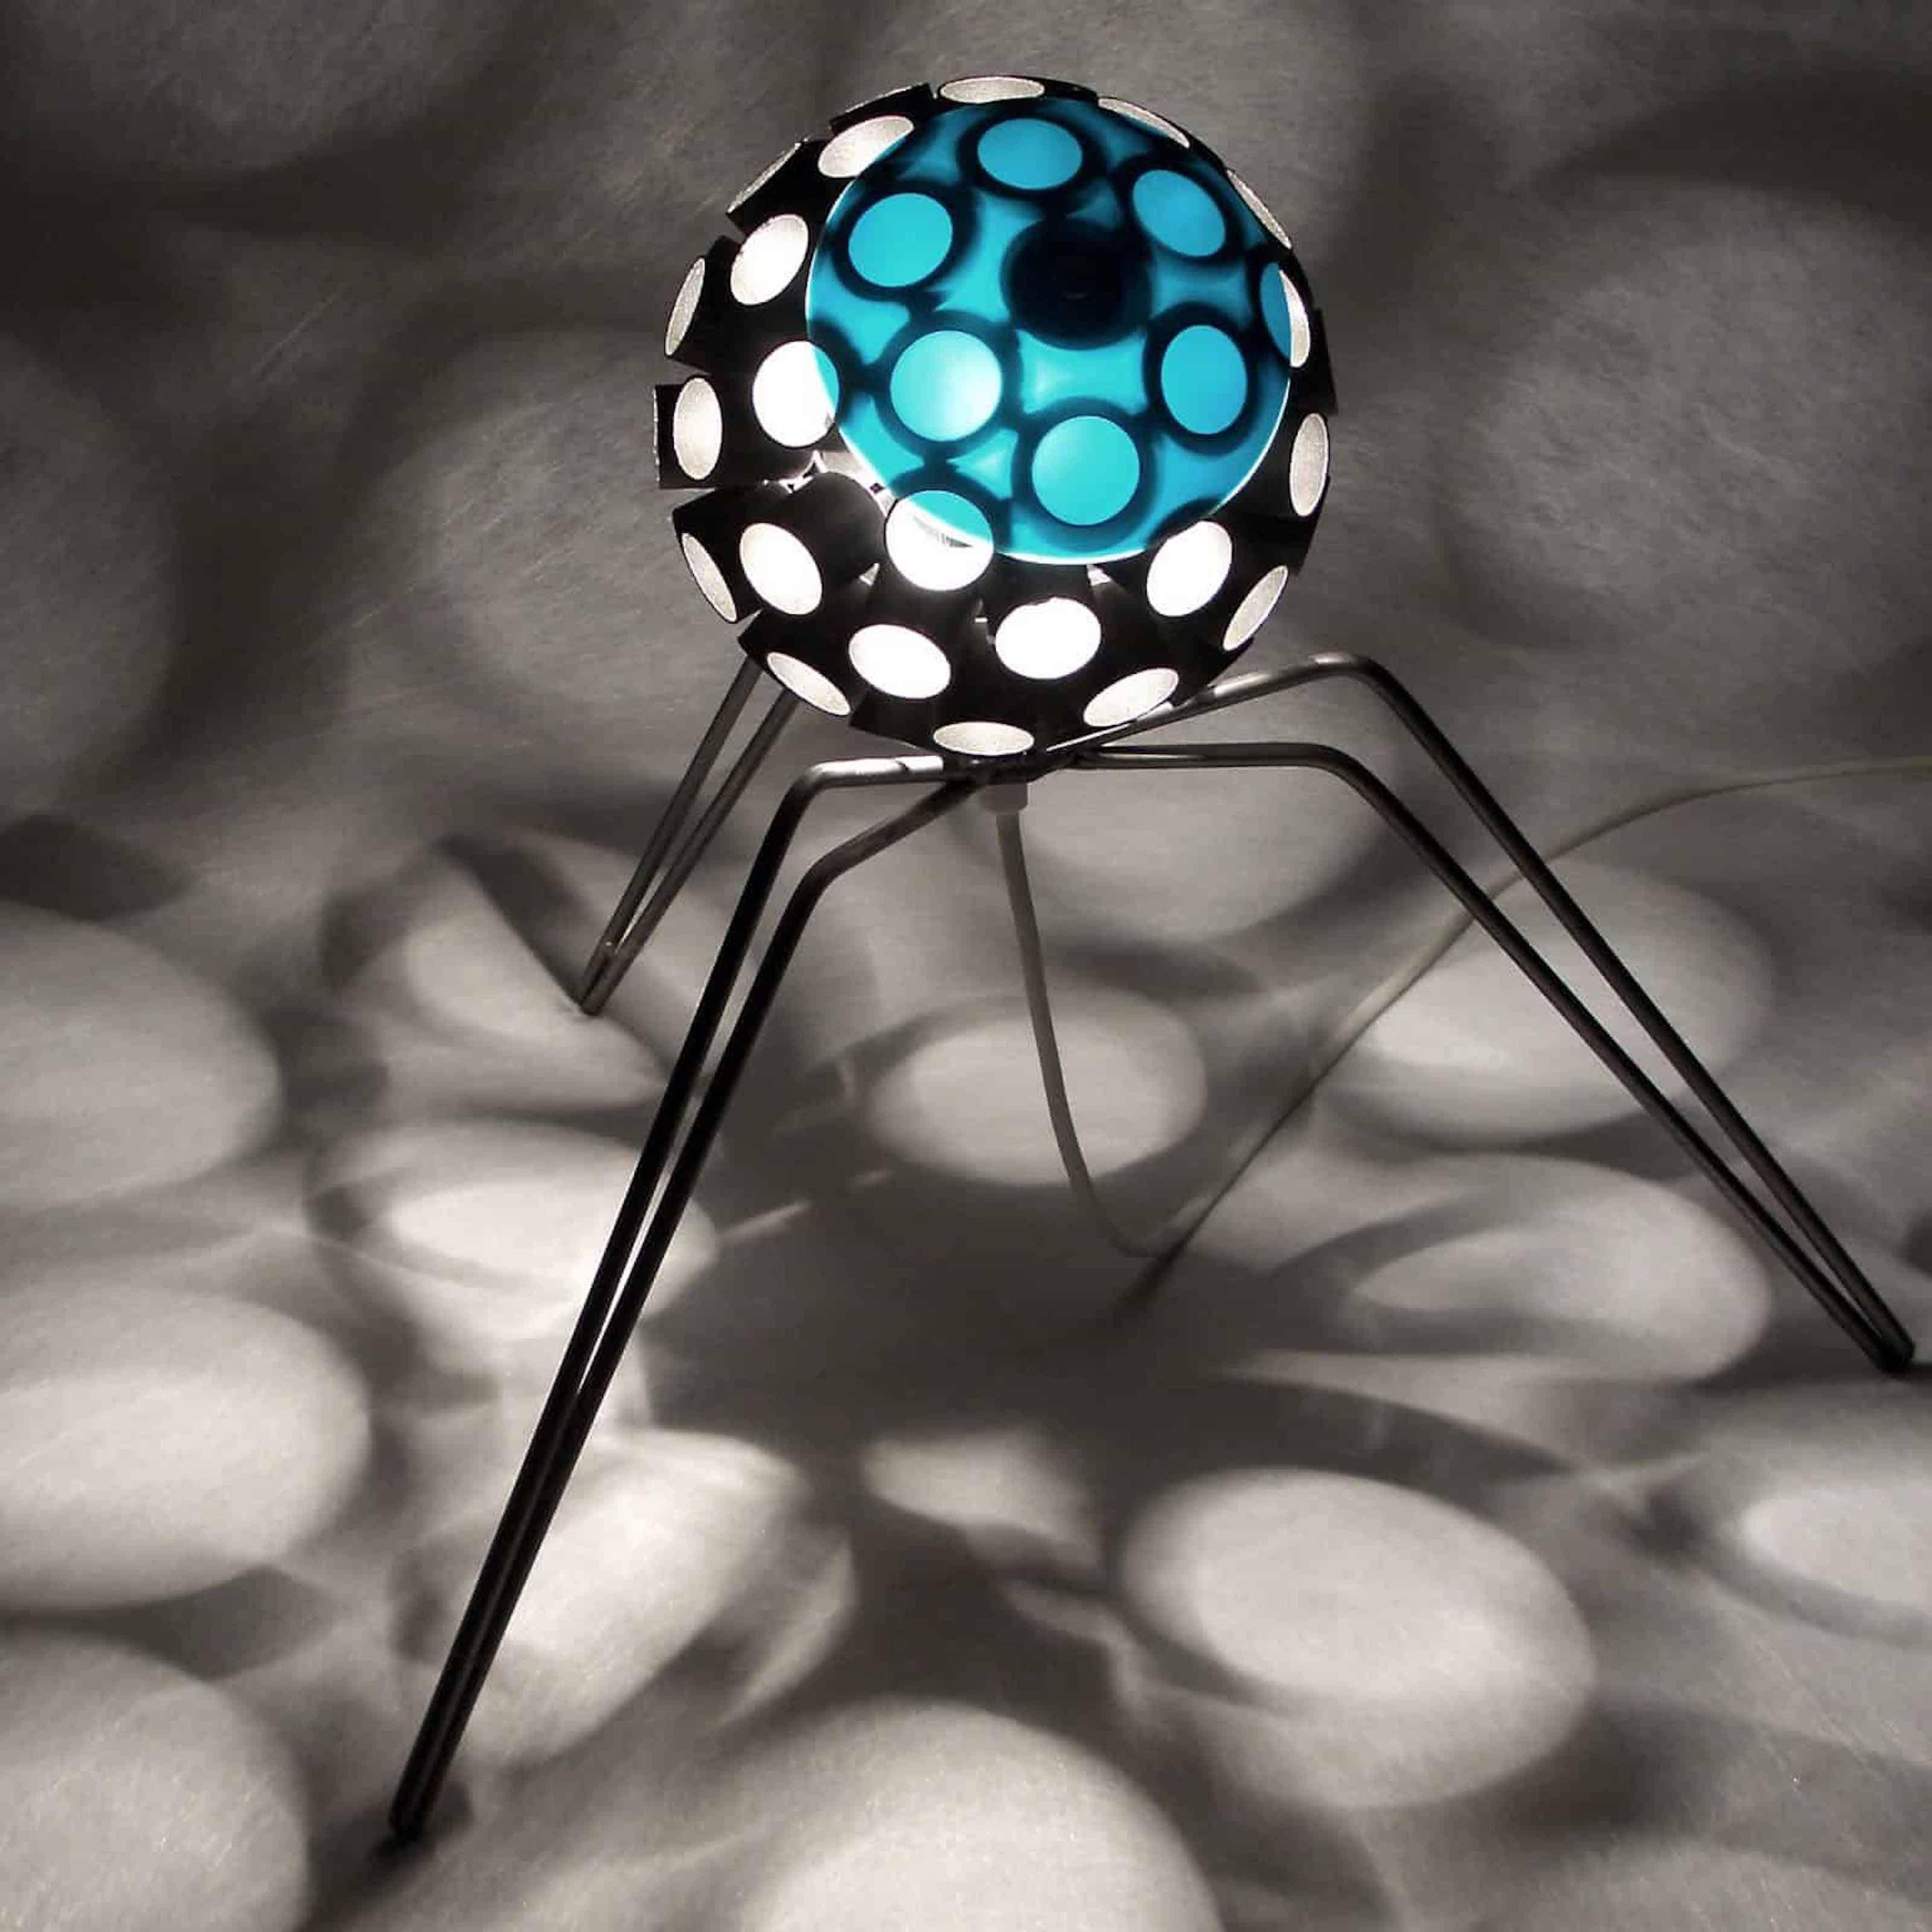 Stefan Traloc Abstract Sculpture - Virus lamp Tripod